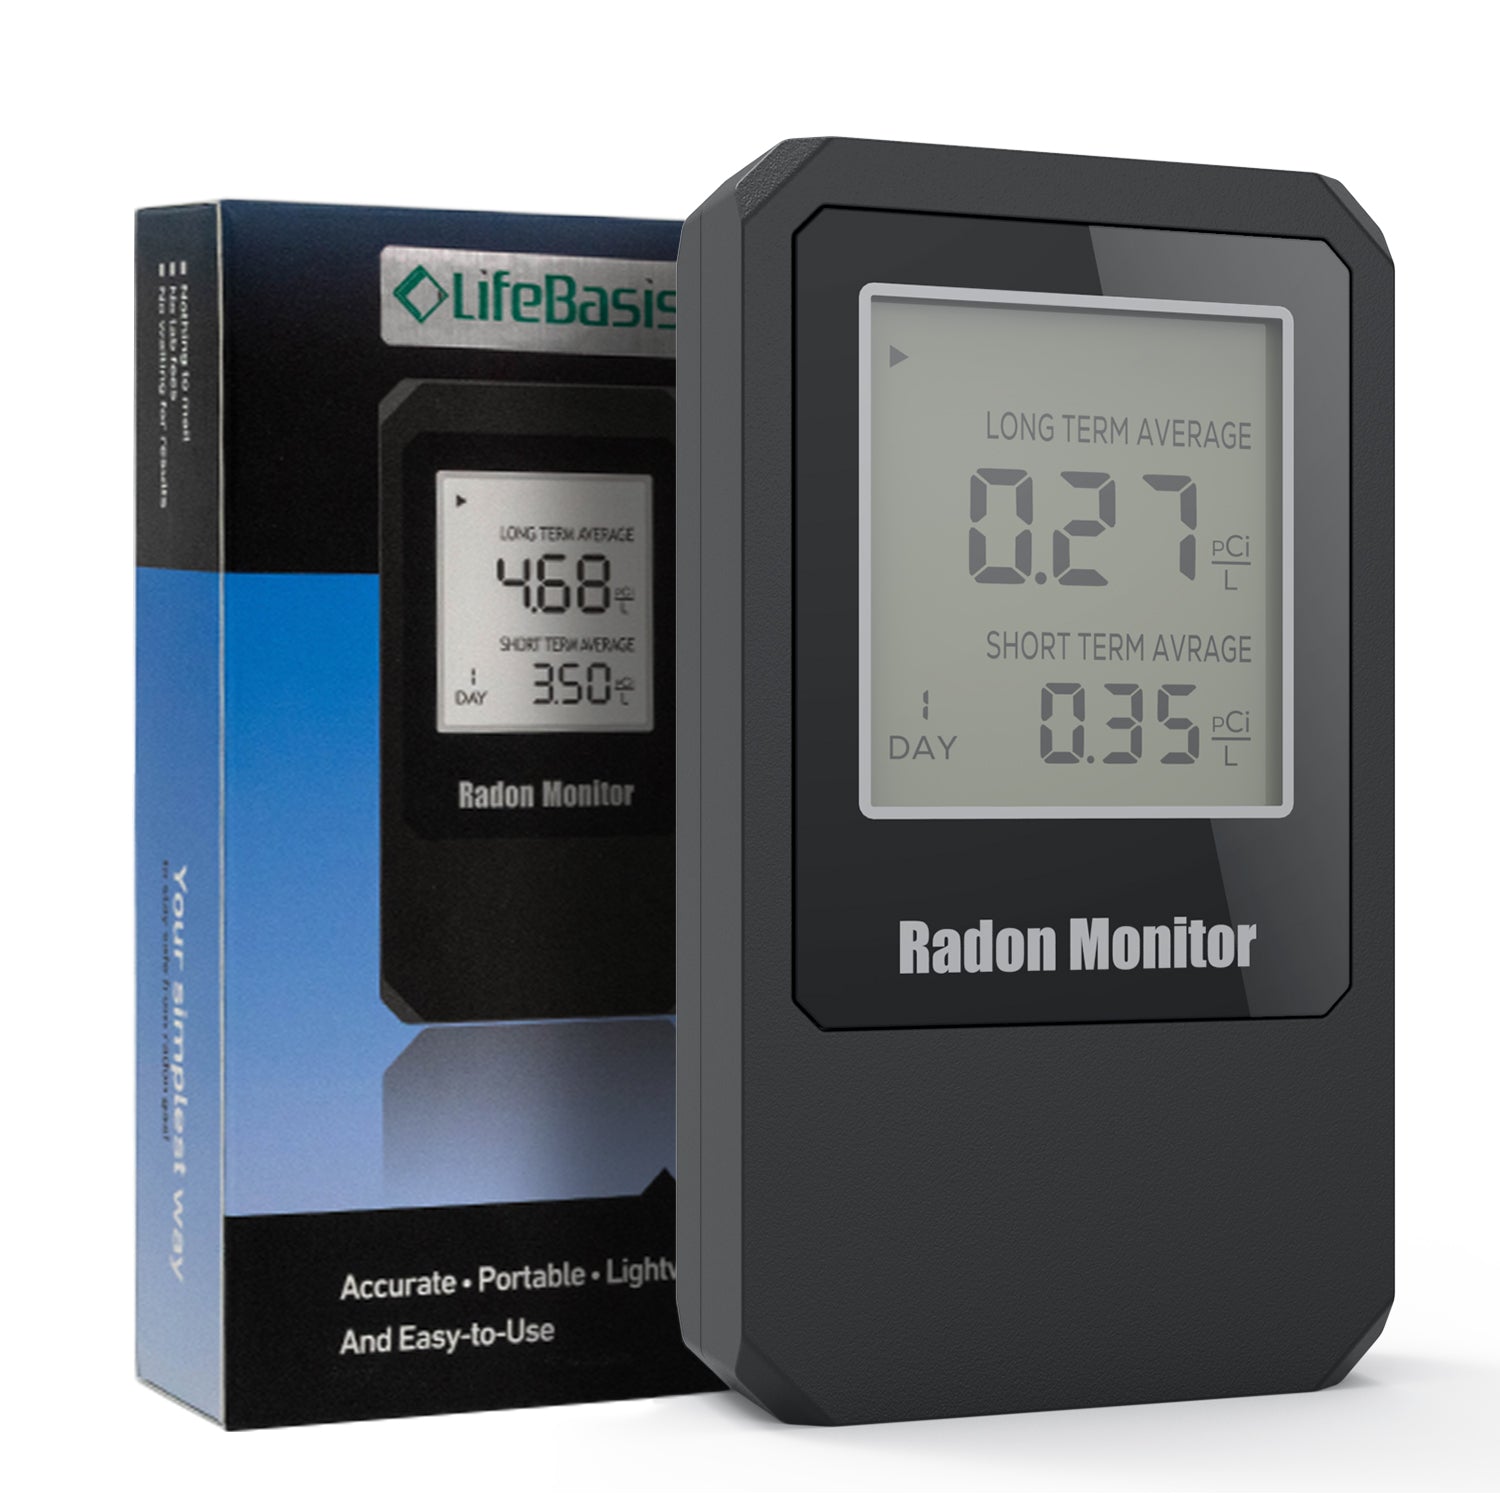 Radon Gas Detector